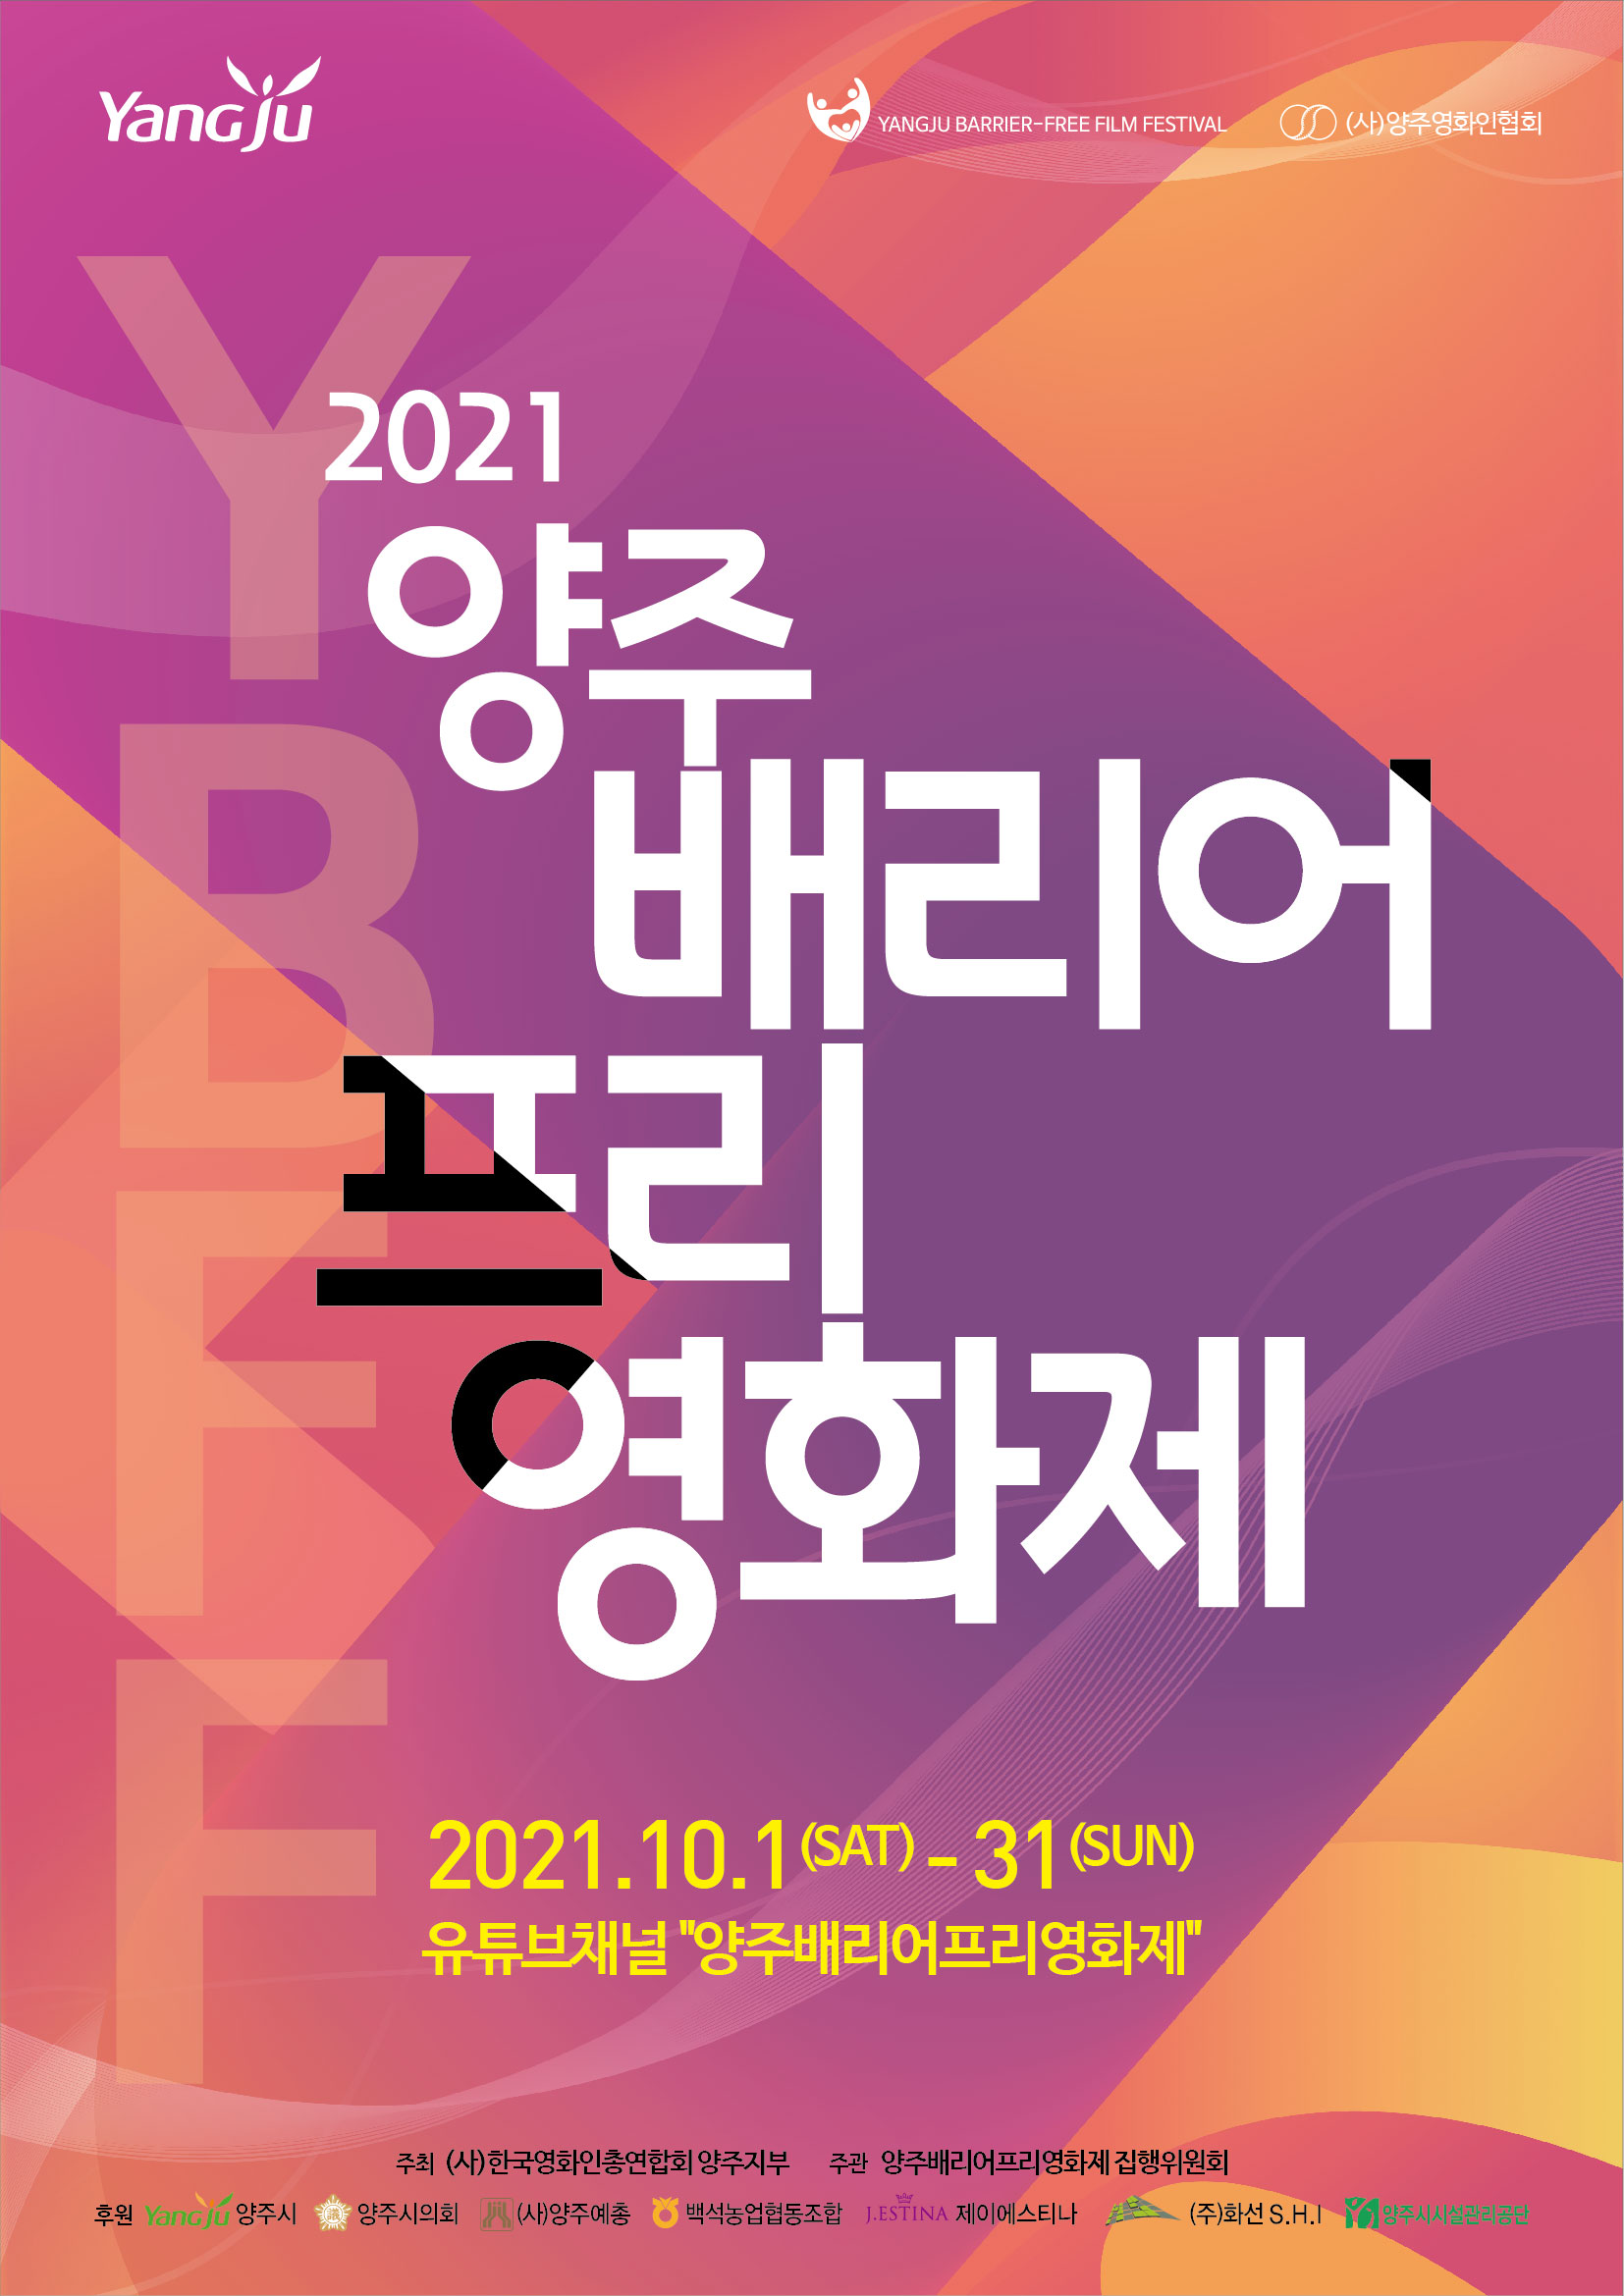 한국영화인총연합회 양주지부, 2021 양주 배리어프리영화제 개최 이미지